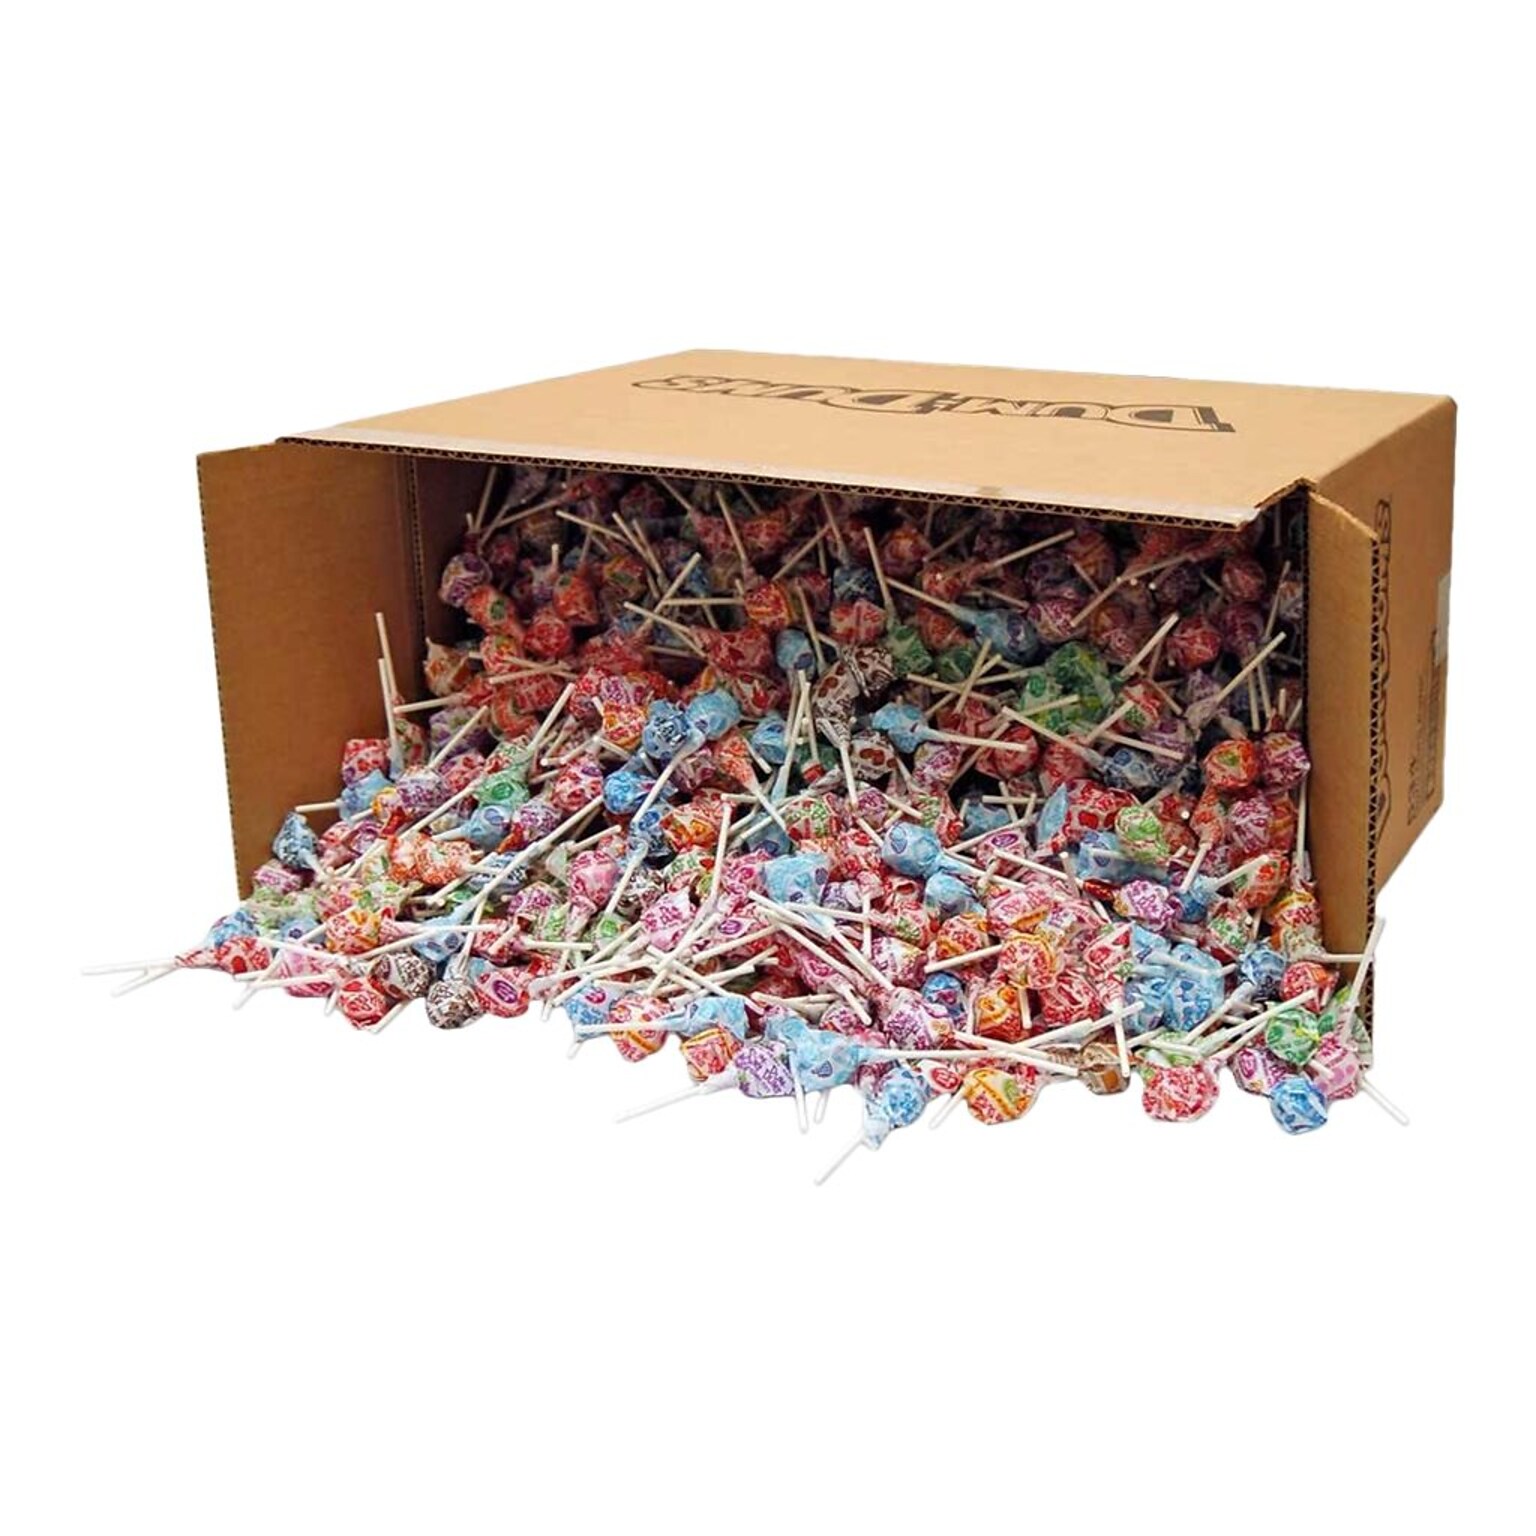 Dum Dums Lollipops, Assorted Flavors, 0.17 oz., 2340 Pieces (359862)